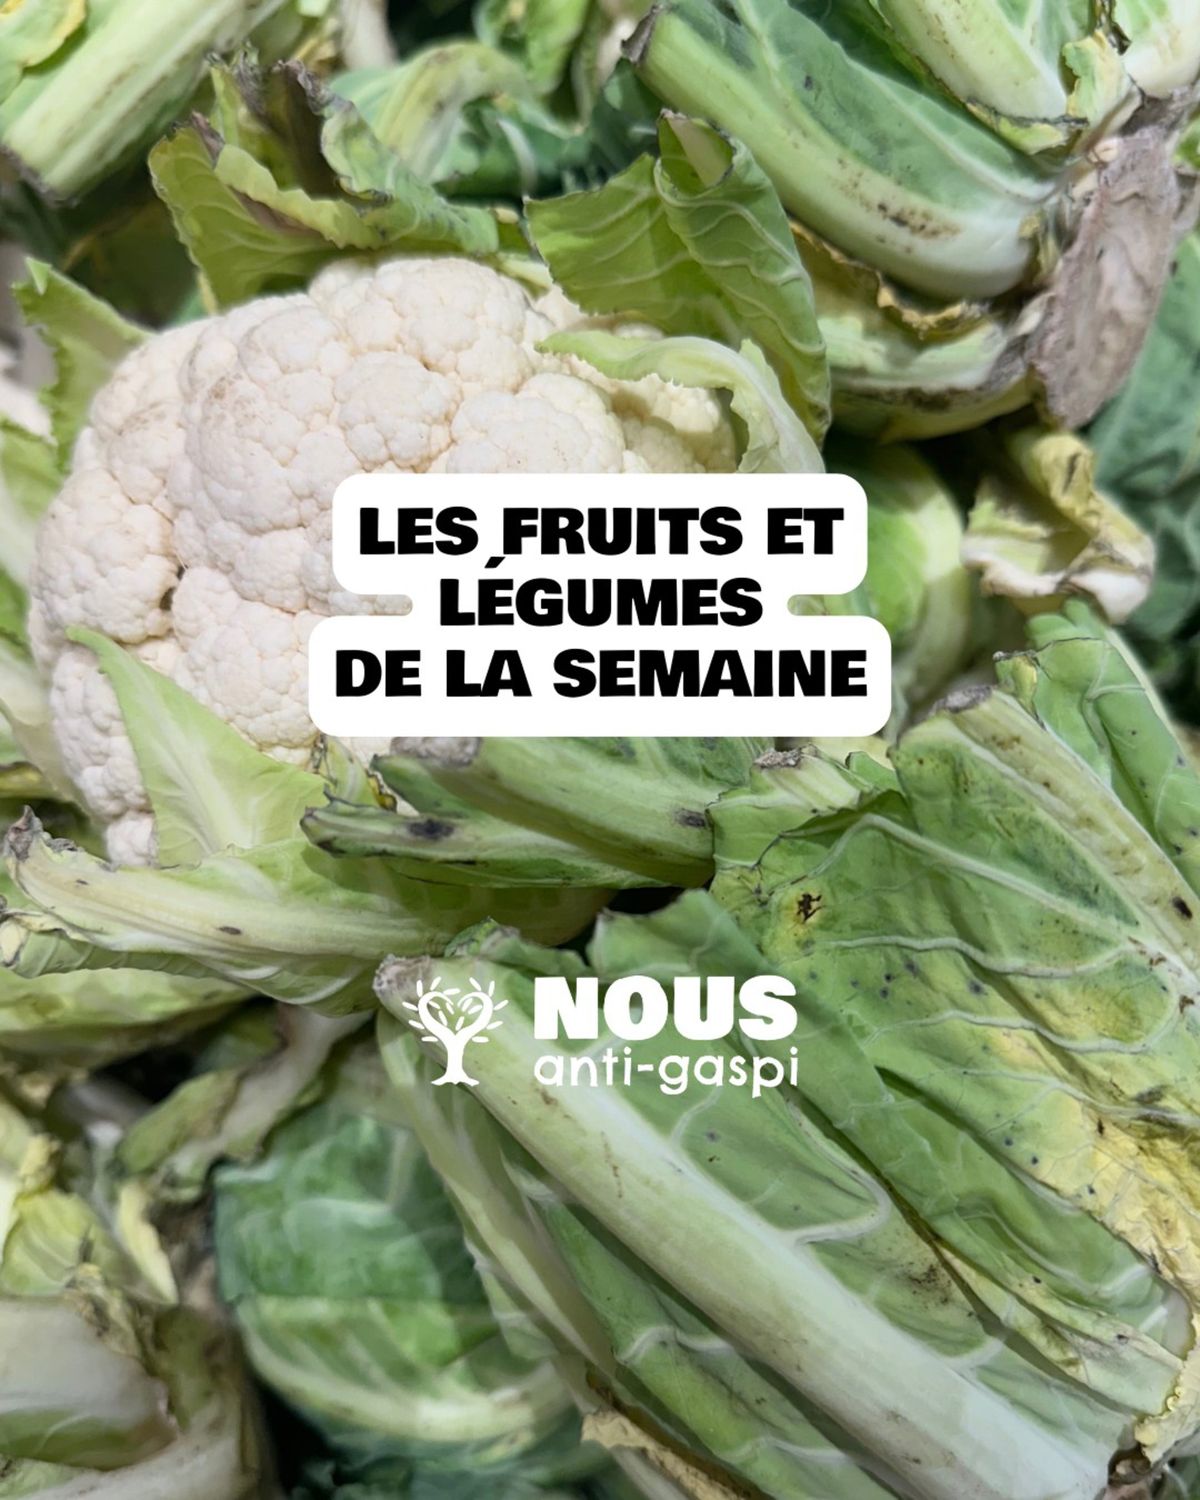 Catalogue NOUS anti-gaspi : il s'agit des Fruits et Légumes de la semaine !, page 00001